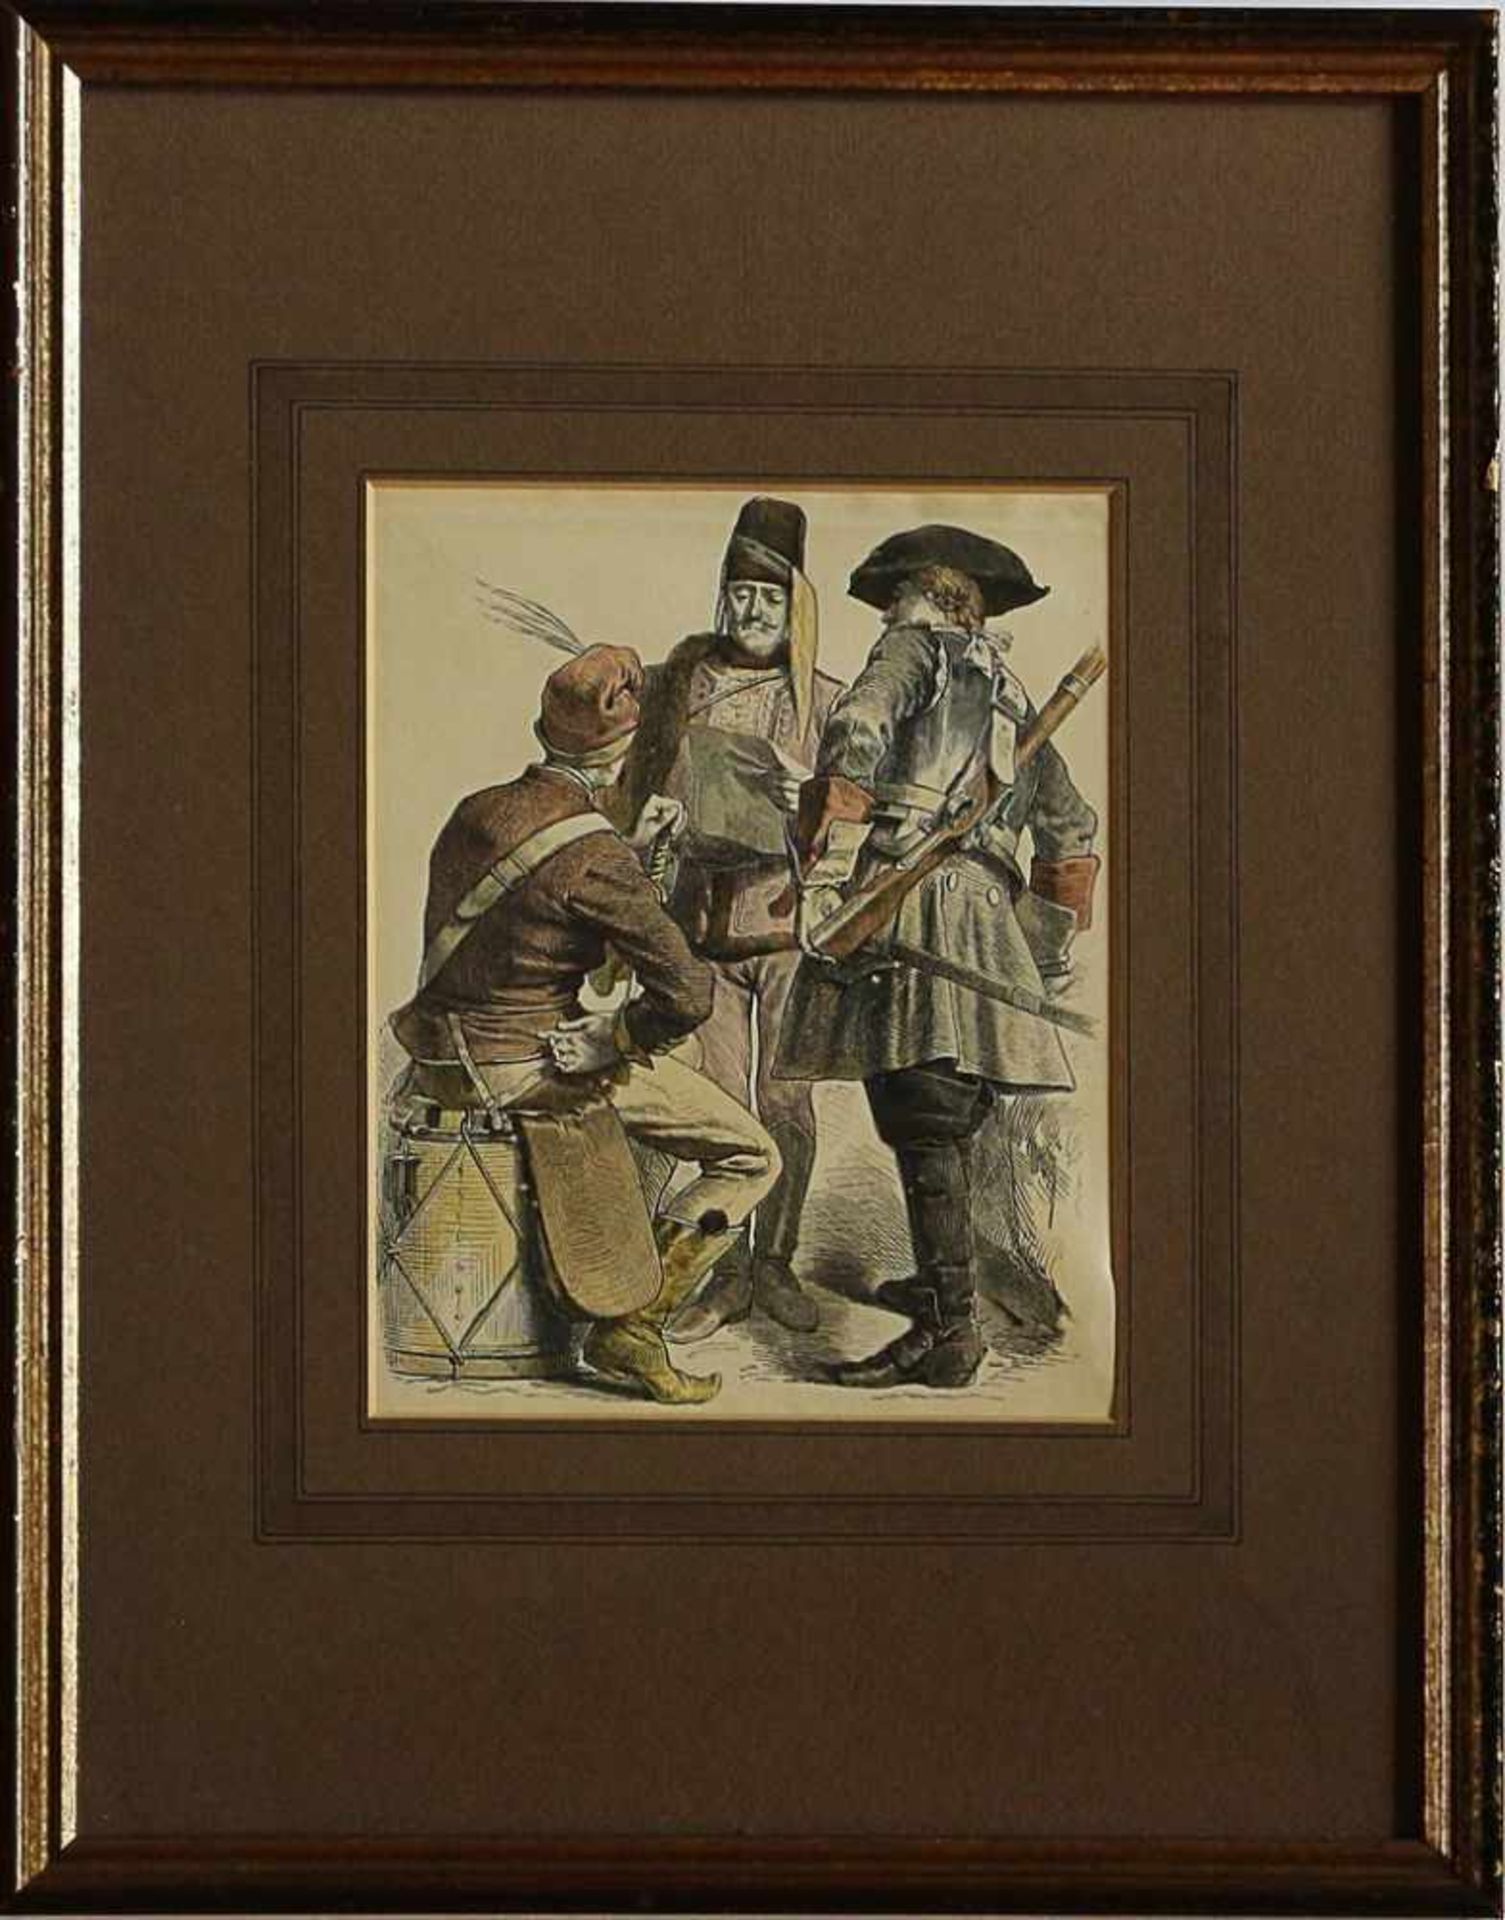 Soldatendarstellungum 1850, Stahlstich, handkoloriert, 3 Soldaten in Uniformen des 18.Jh.,